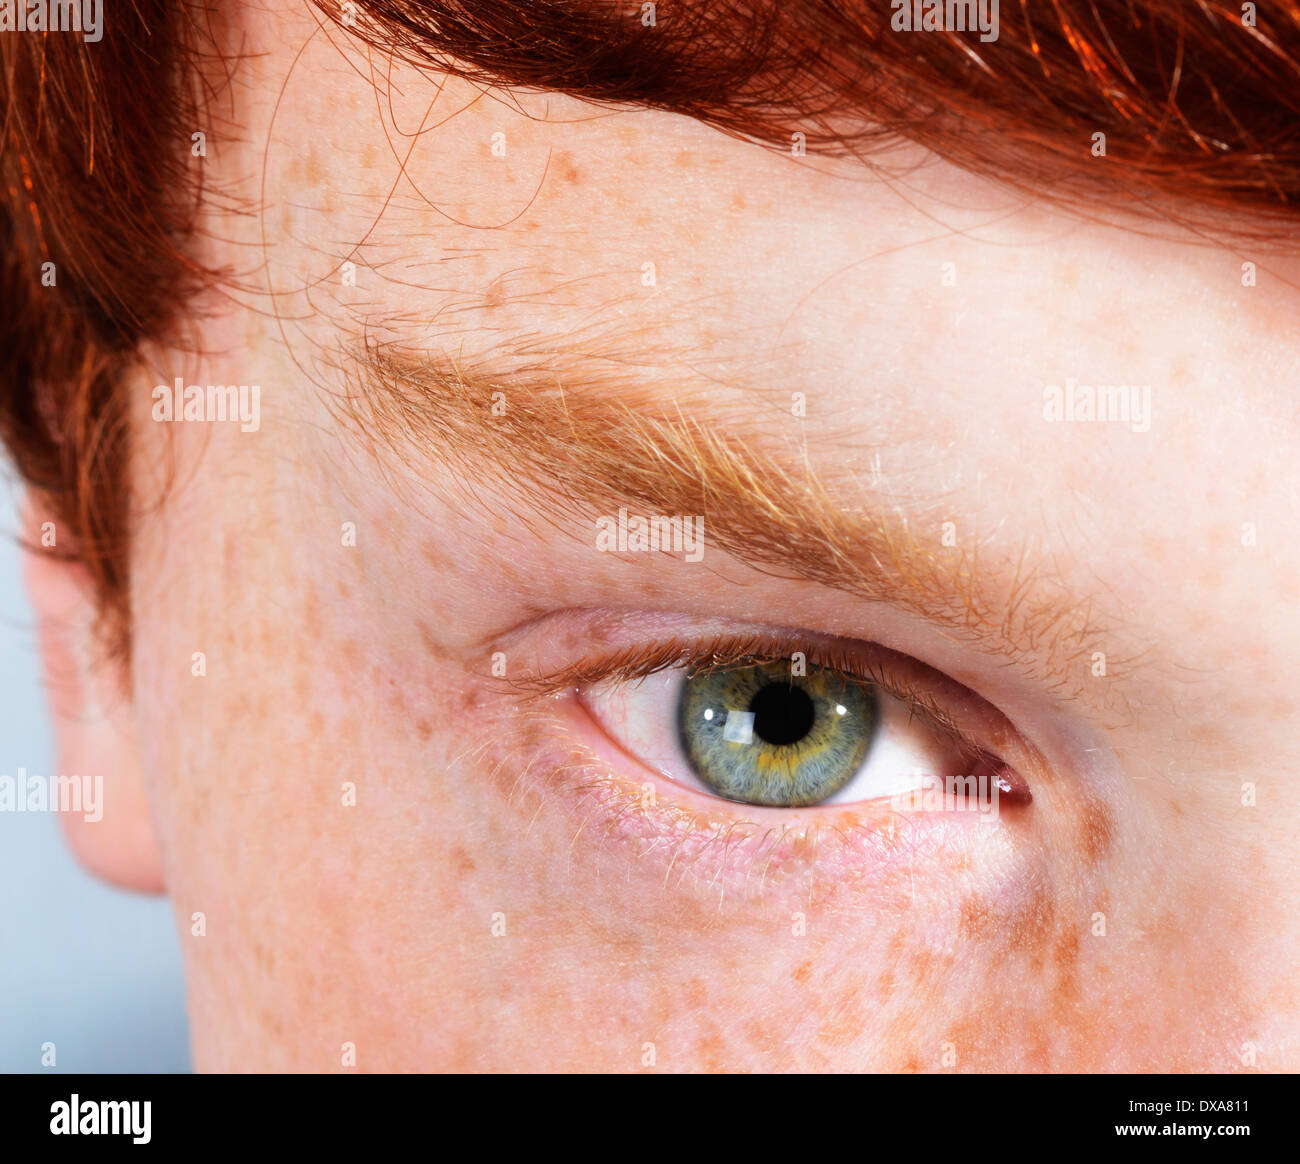 Occhio del giovane con i capelli rossi, lentiggini e occhi verdi Foto Stock